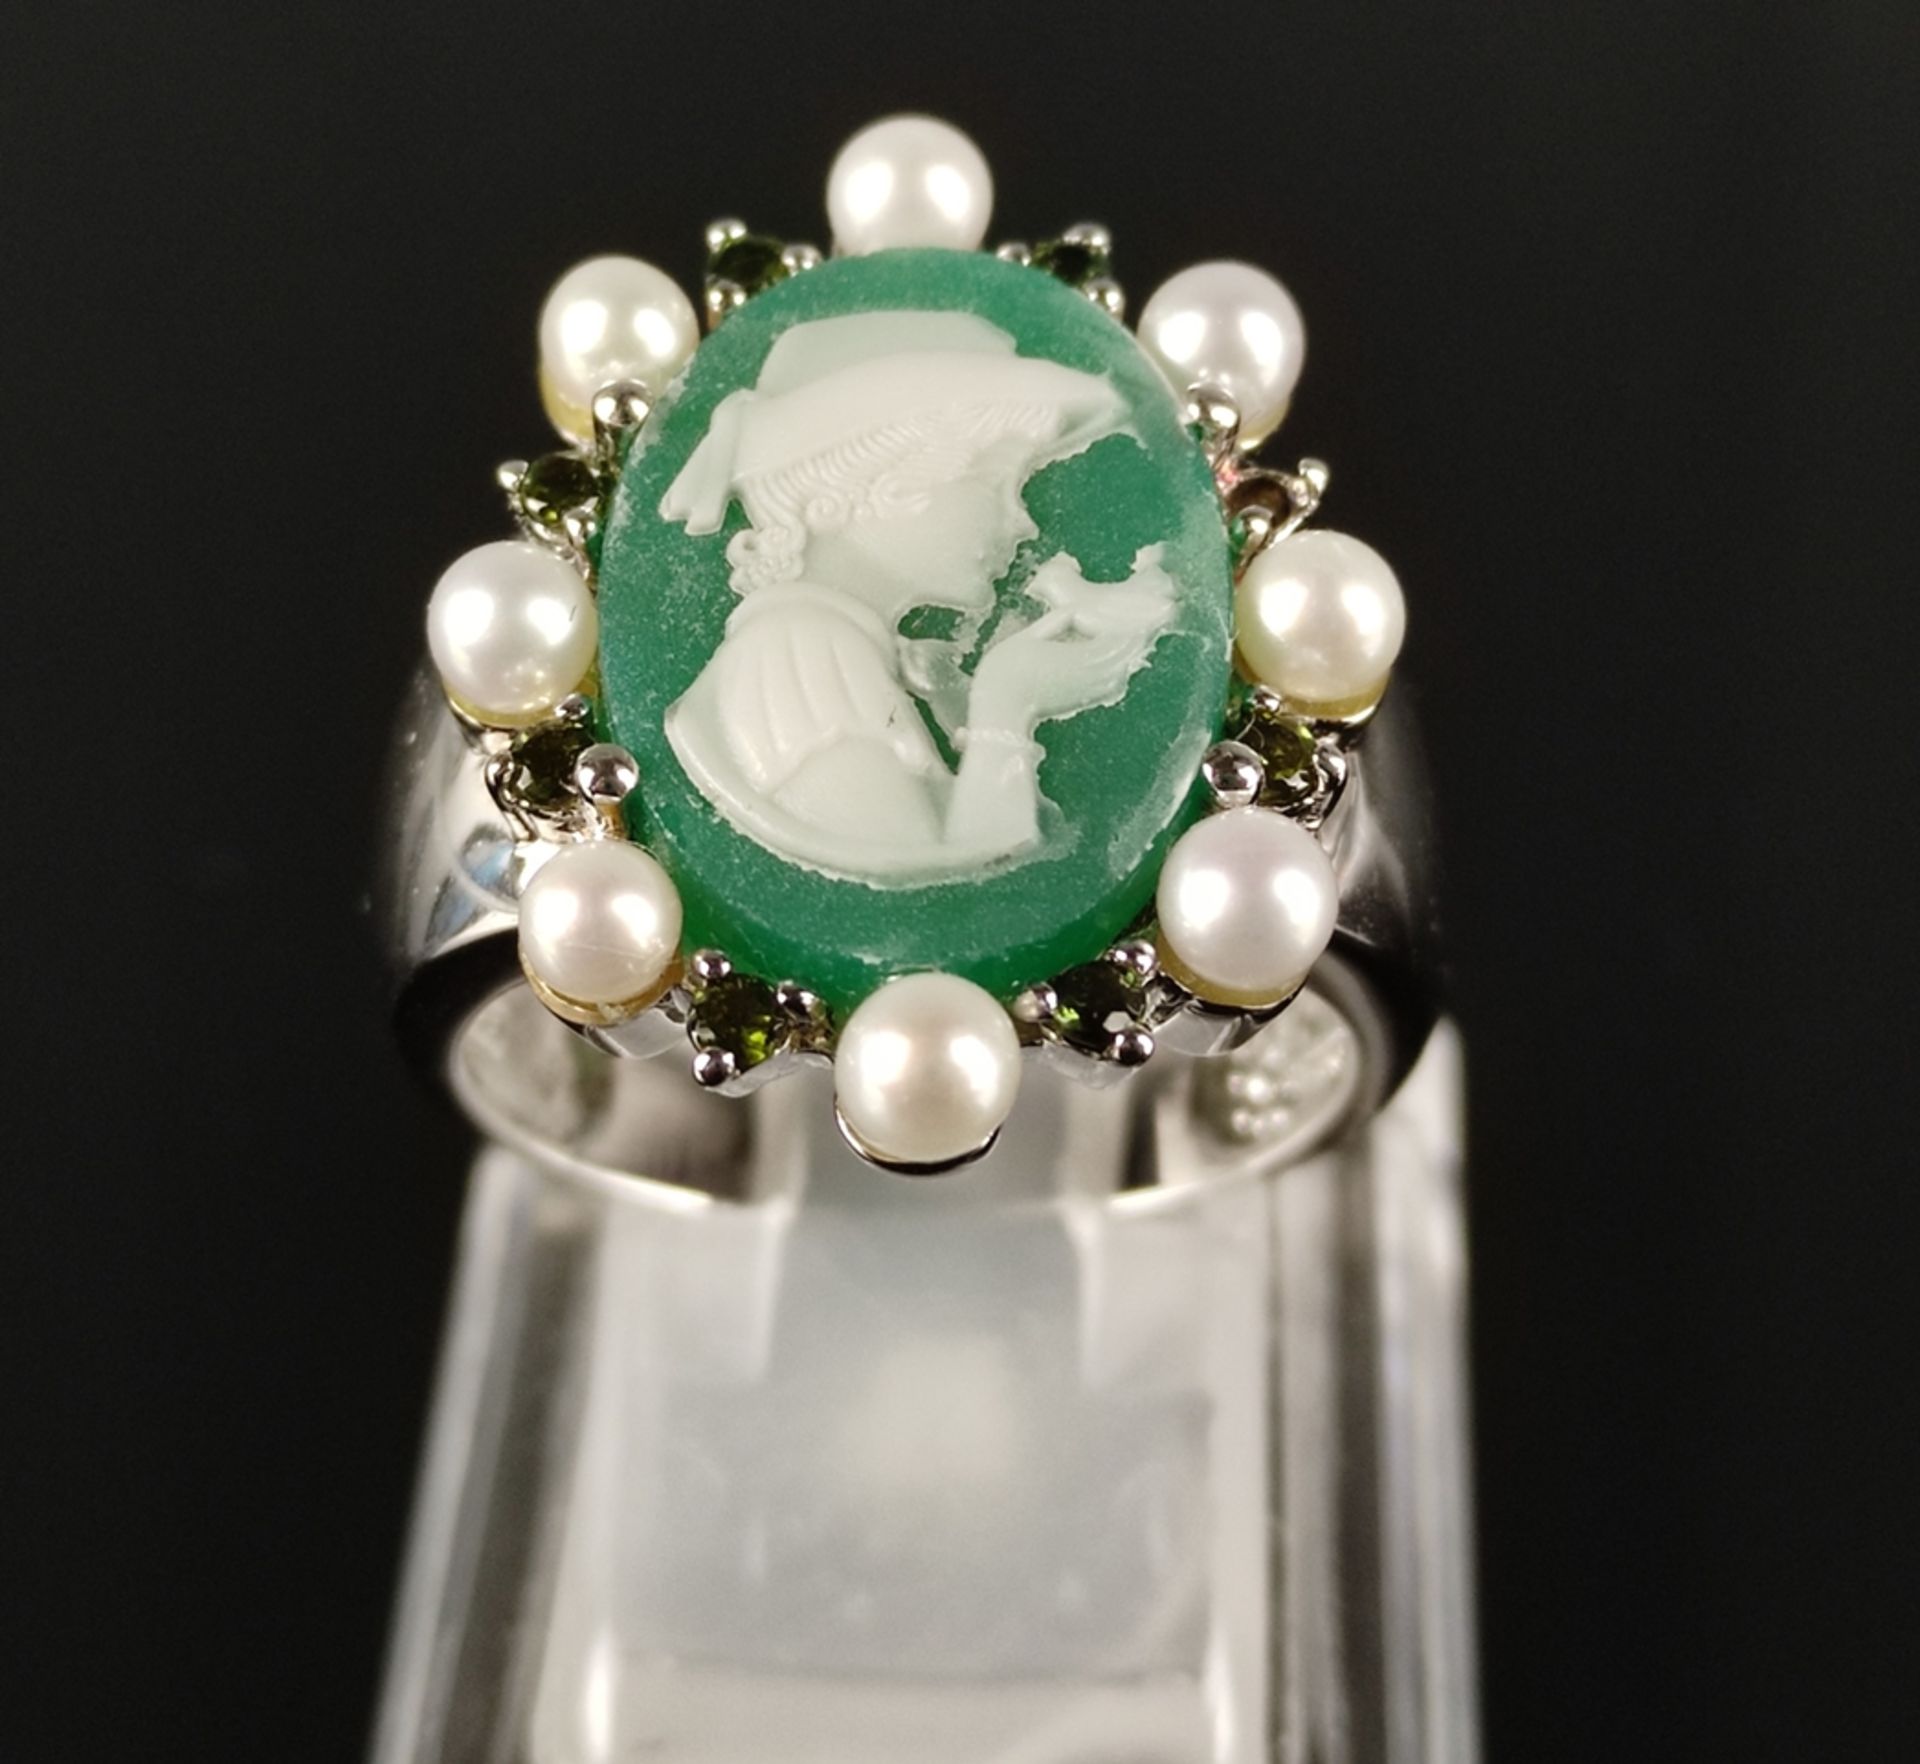 Achat-Kameo-Ring, Ringkopf besetzt mit grünem Achat, dargestellt eine junge Frau mit Vogel auf der  - Bild 3 aus 4